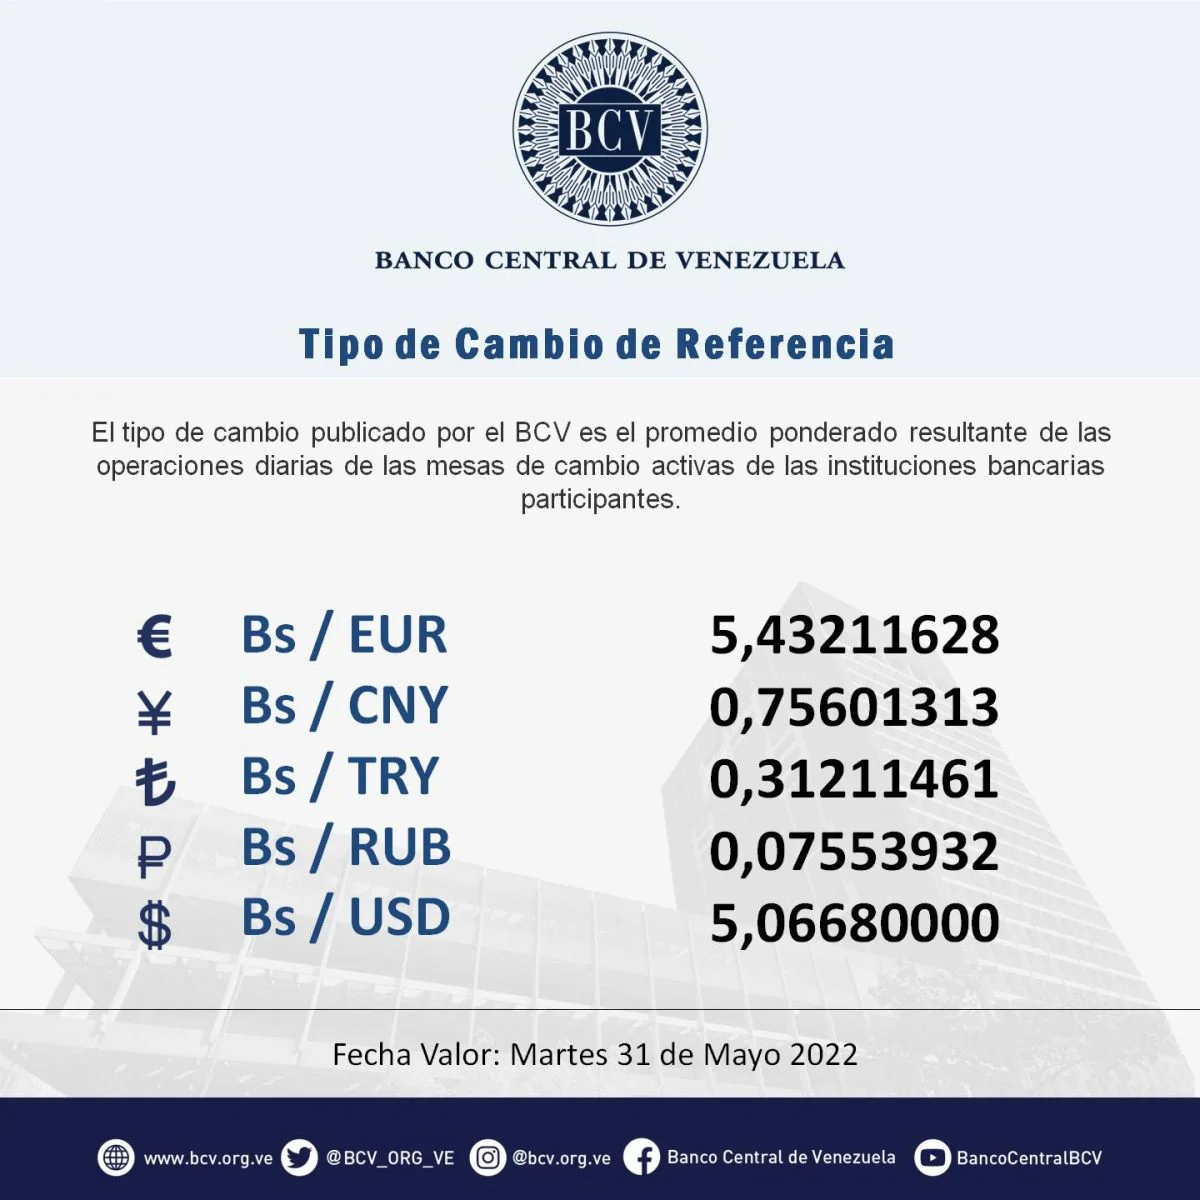 dolartoday en venezuela precio del dolar sabado 28 de mayo de 2022 laverdaddemonagas.com bcv66